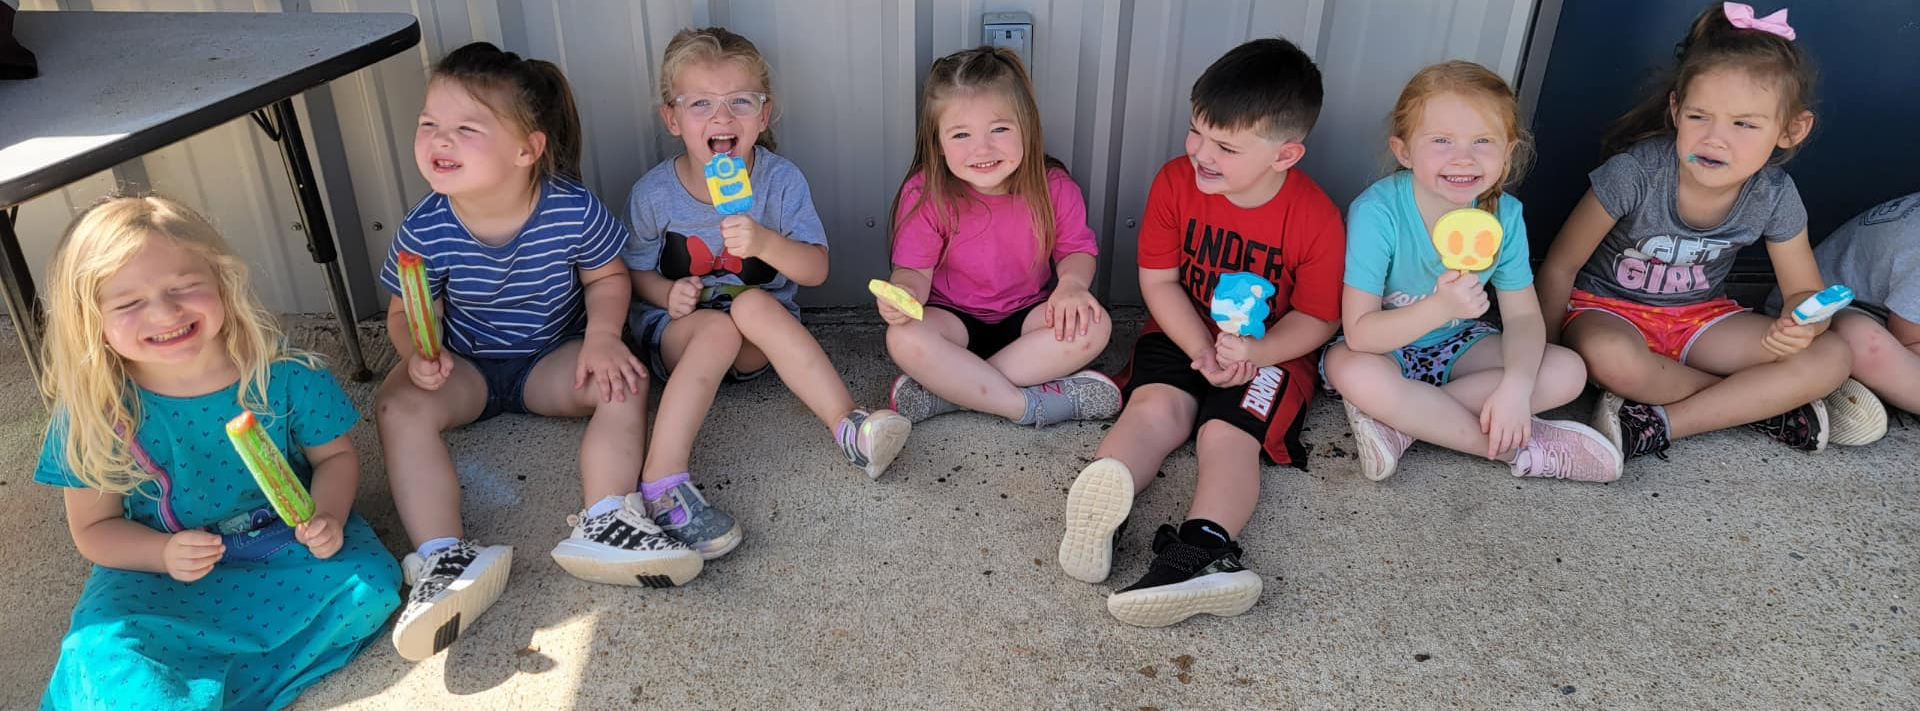 kids sitting outside eating popsicles